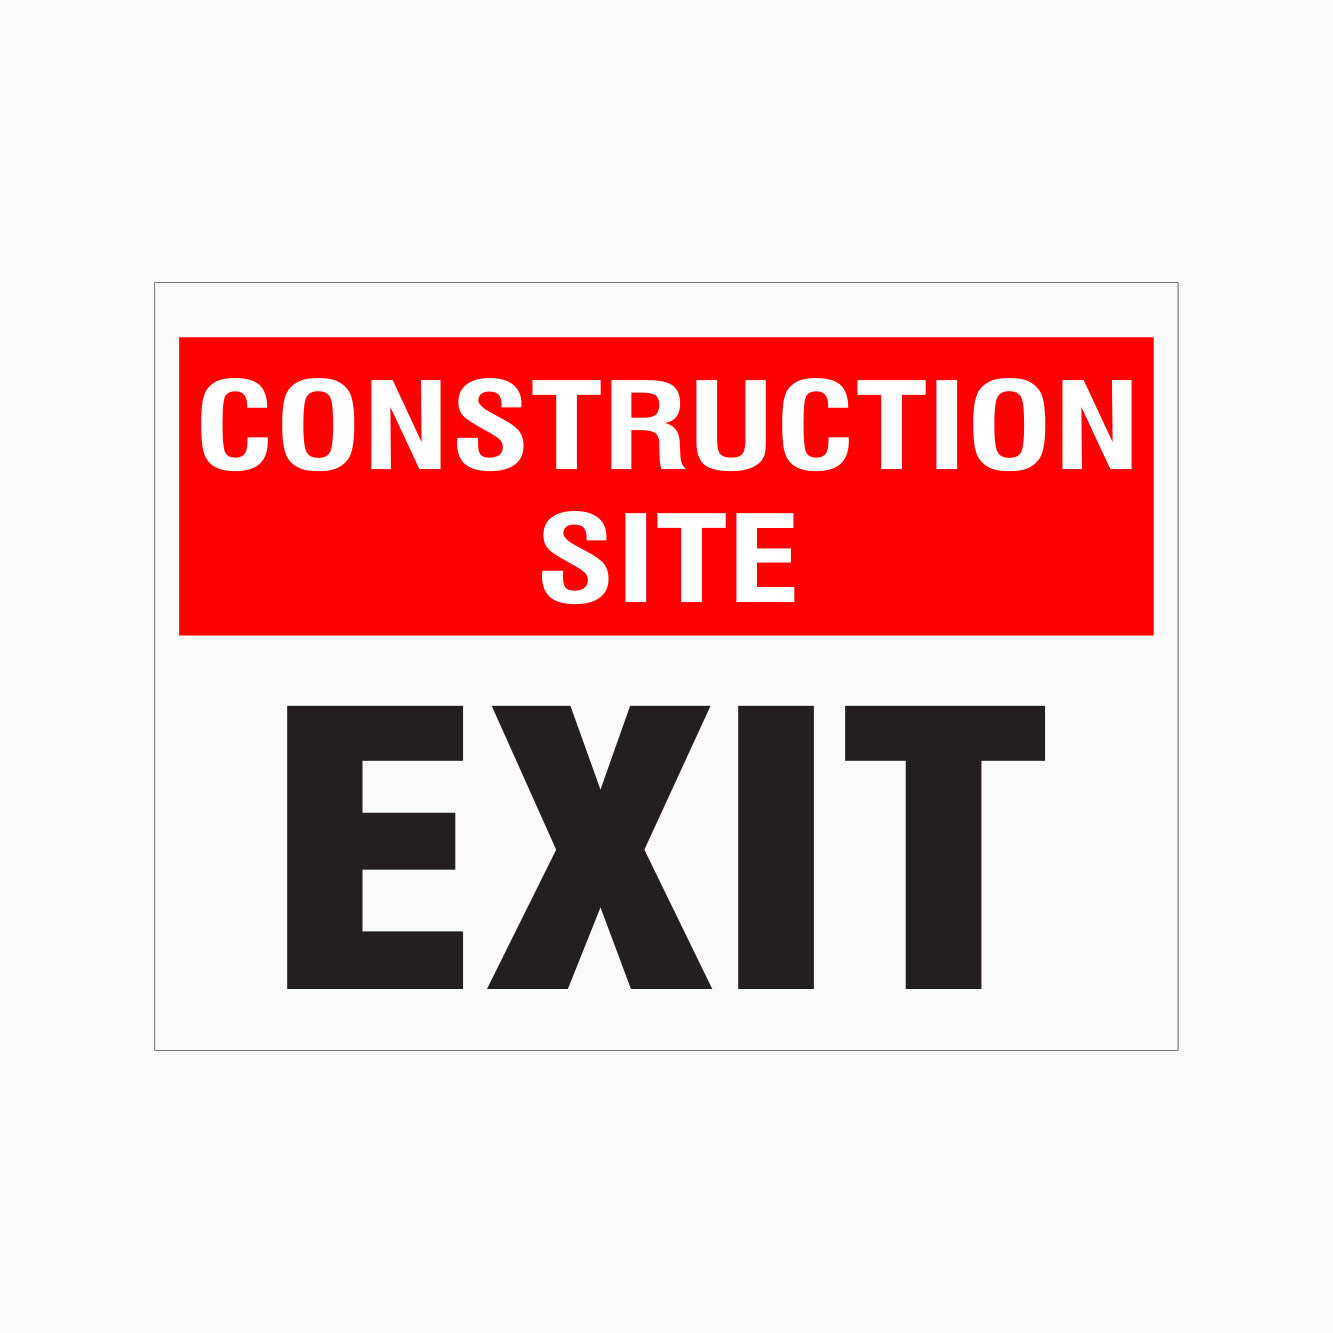 CONSTRUCTION SITE - EXIT SIGN